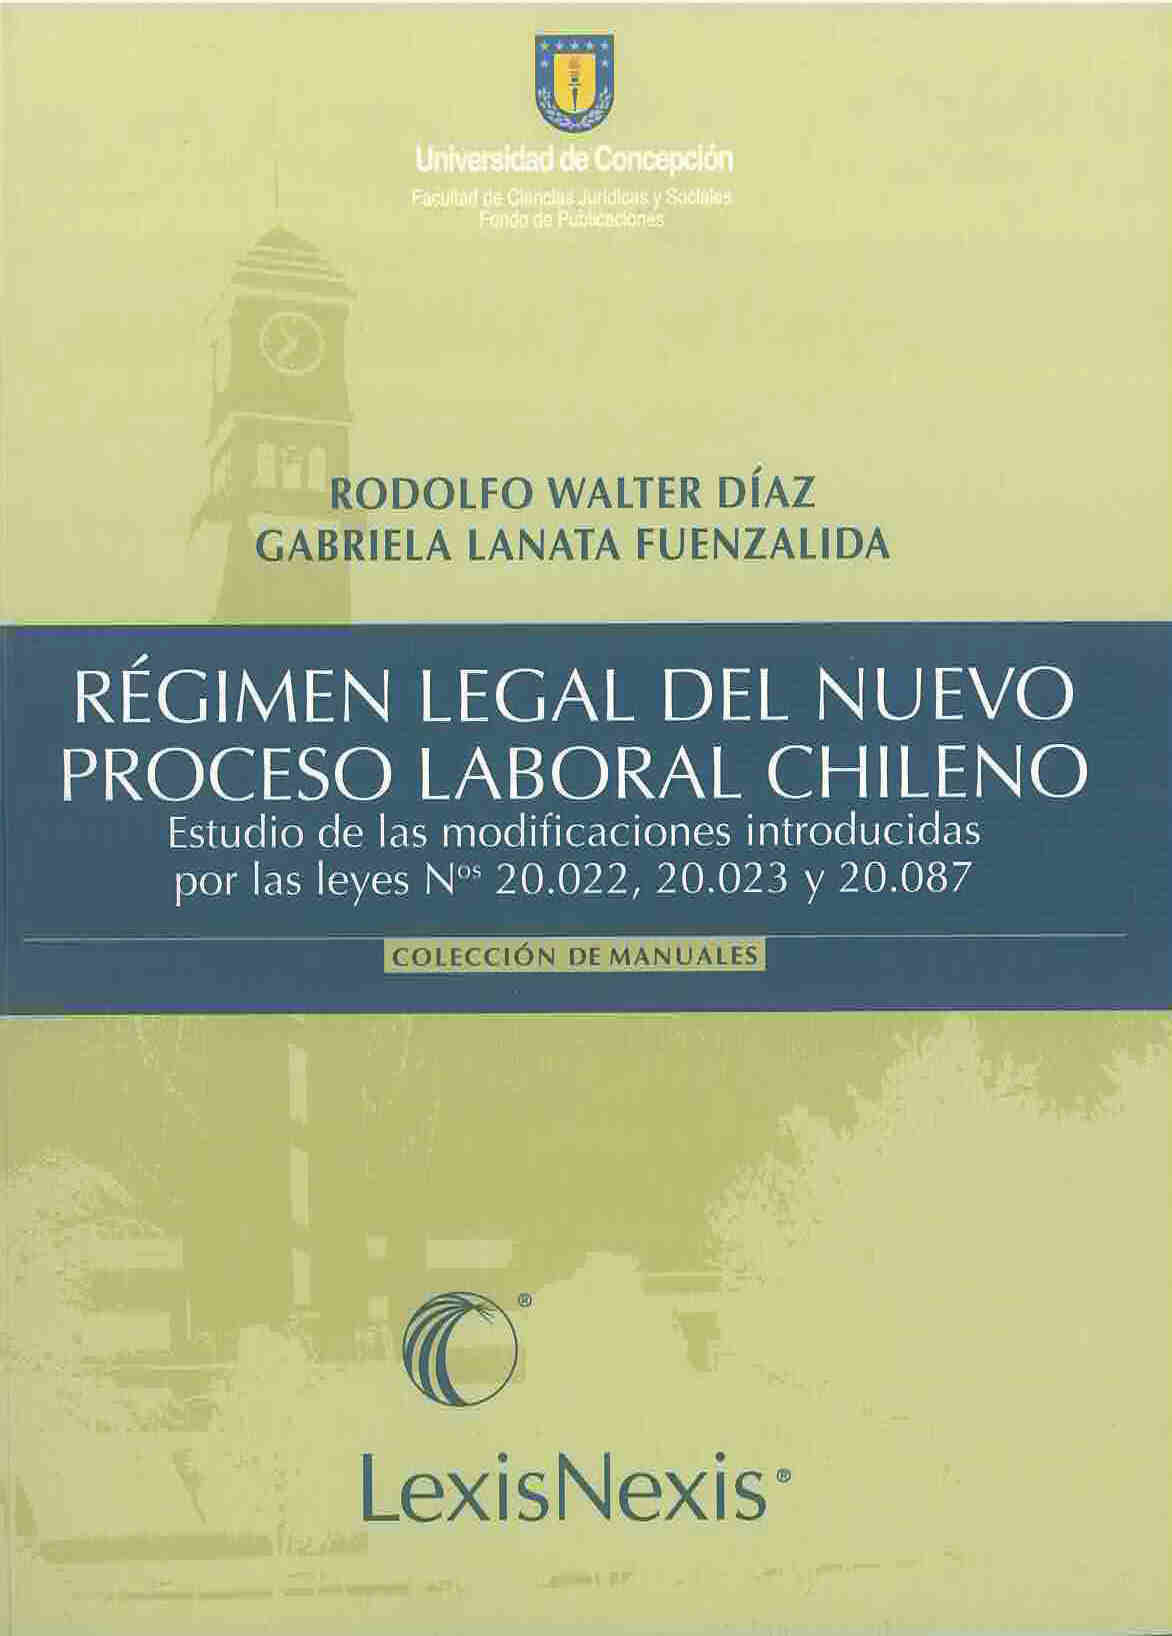 Régimen legal del nuevo proceso laboral chileno. Estudio de las modificaciones introducidas por las leyes N°s. 20.022, 20.023 y 20.087